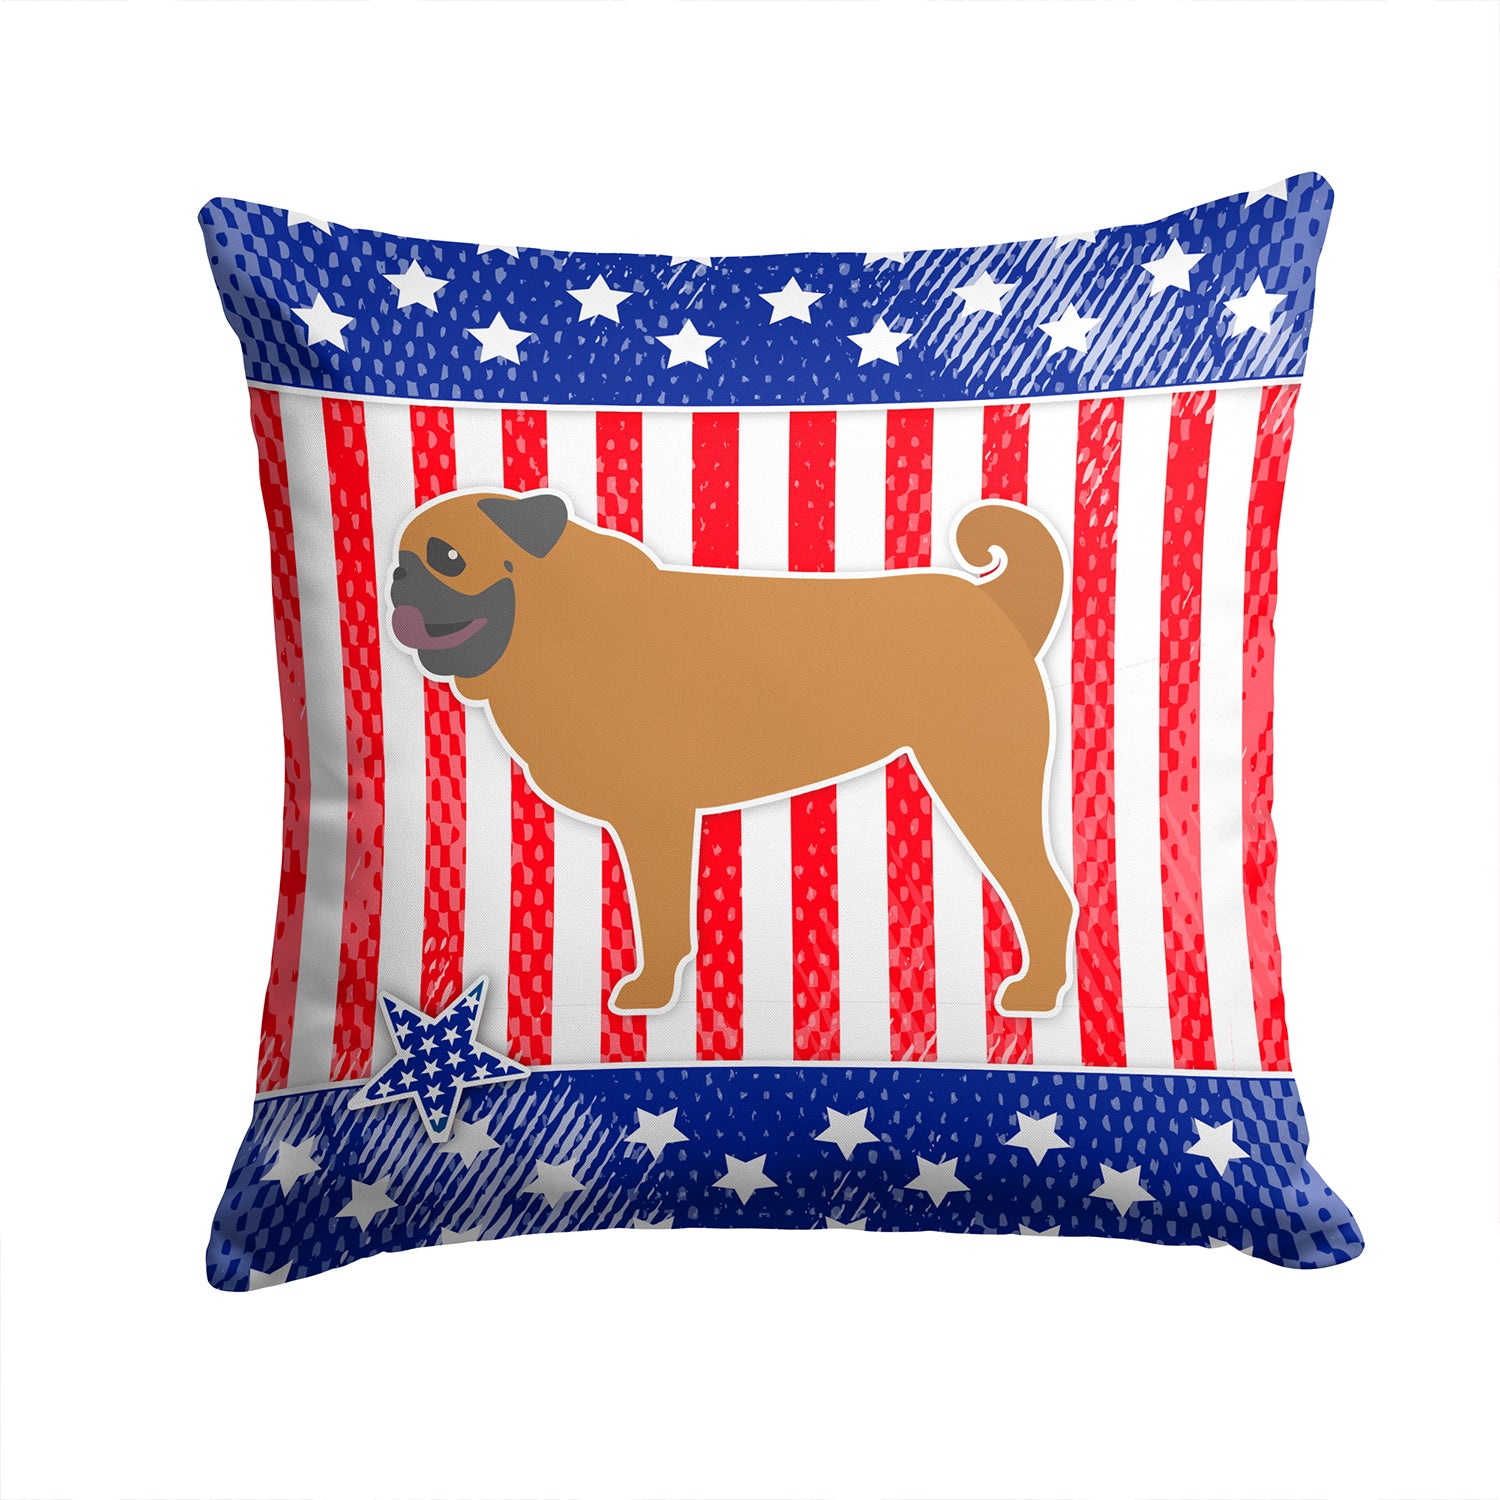 USA Patriotic Pug Fabric Decorative Pillow BB3347PW1414 - the-store.com